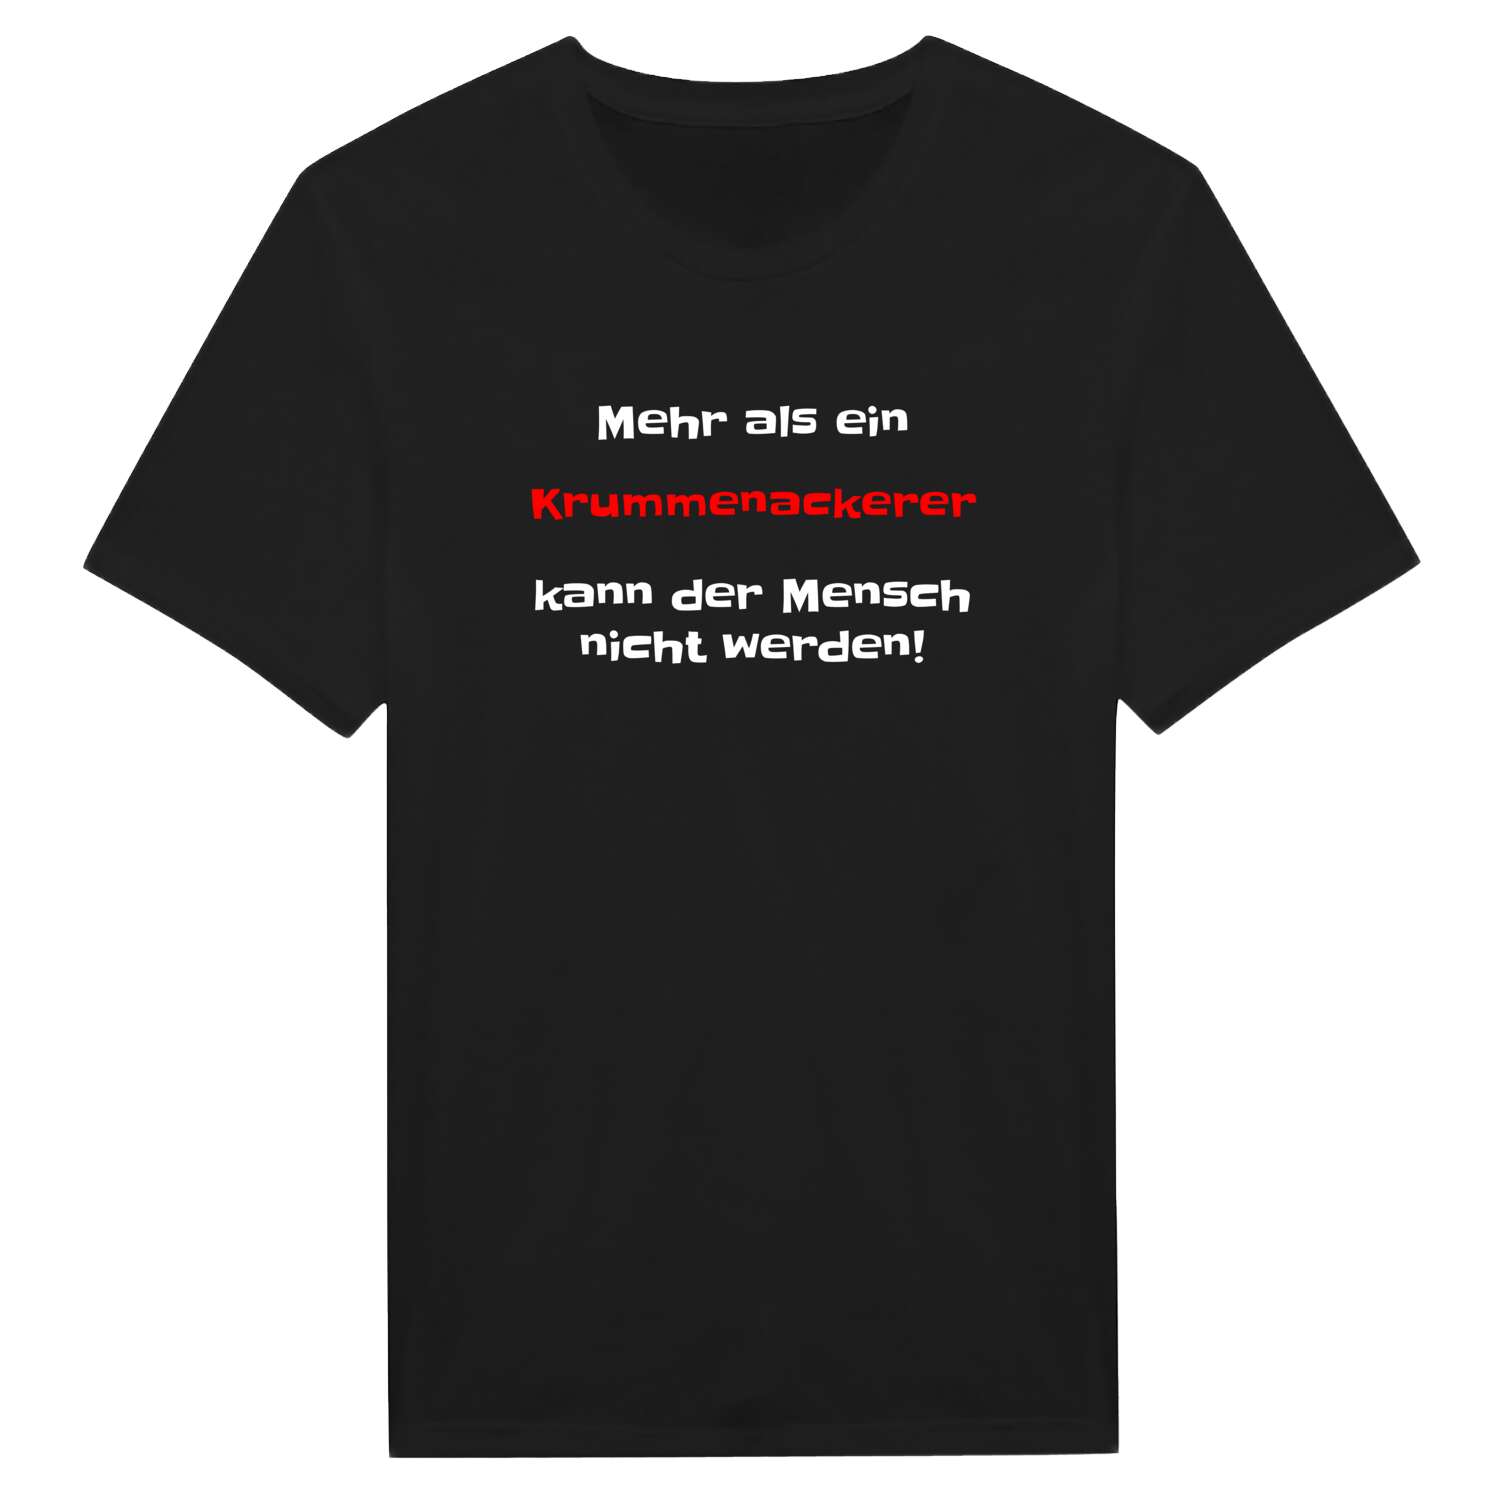 Krummenacker T-Shirt »Mehr als ein«